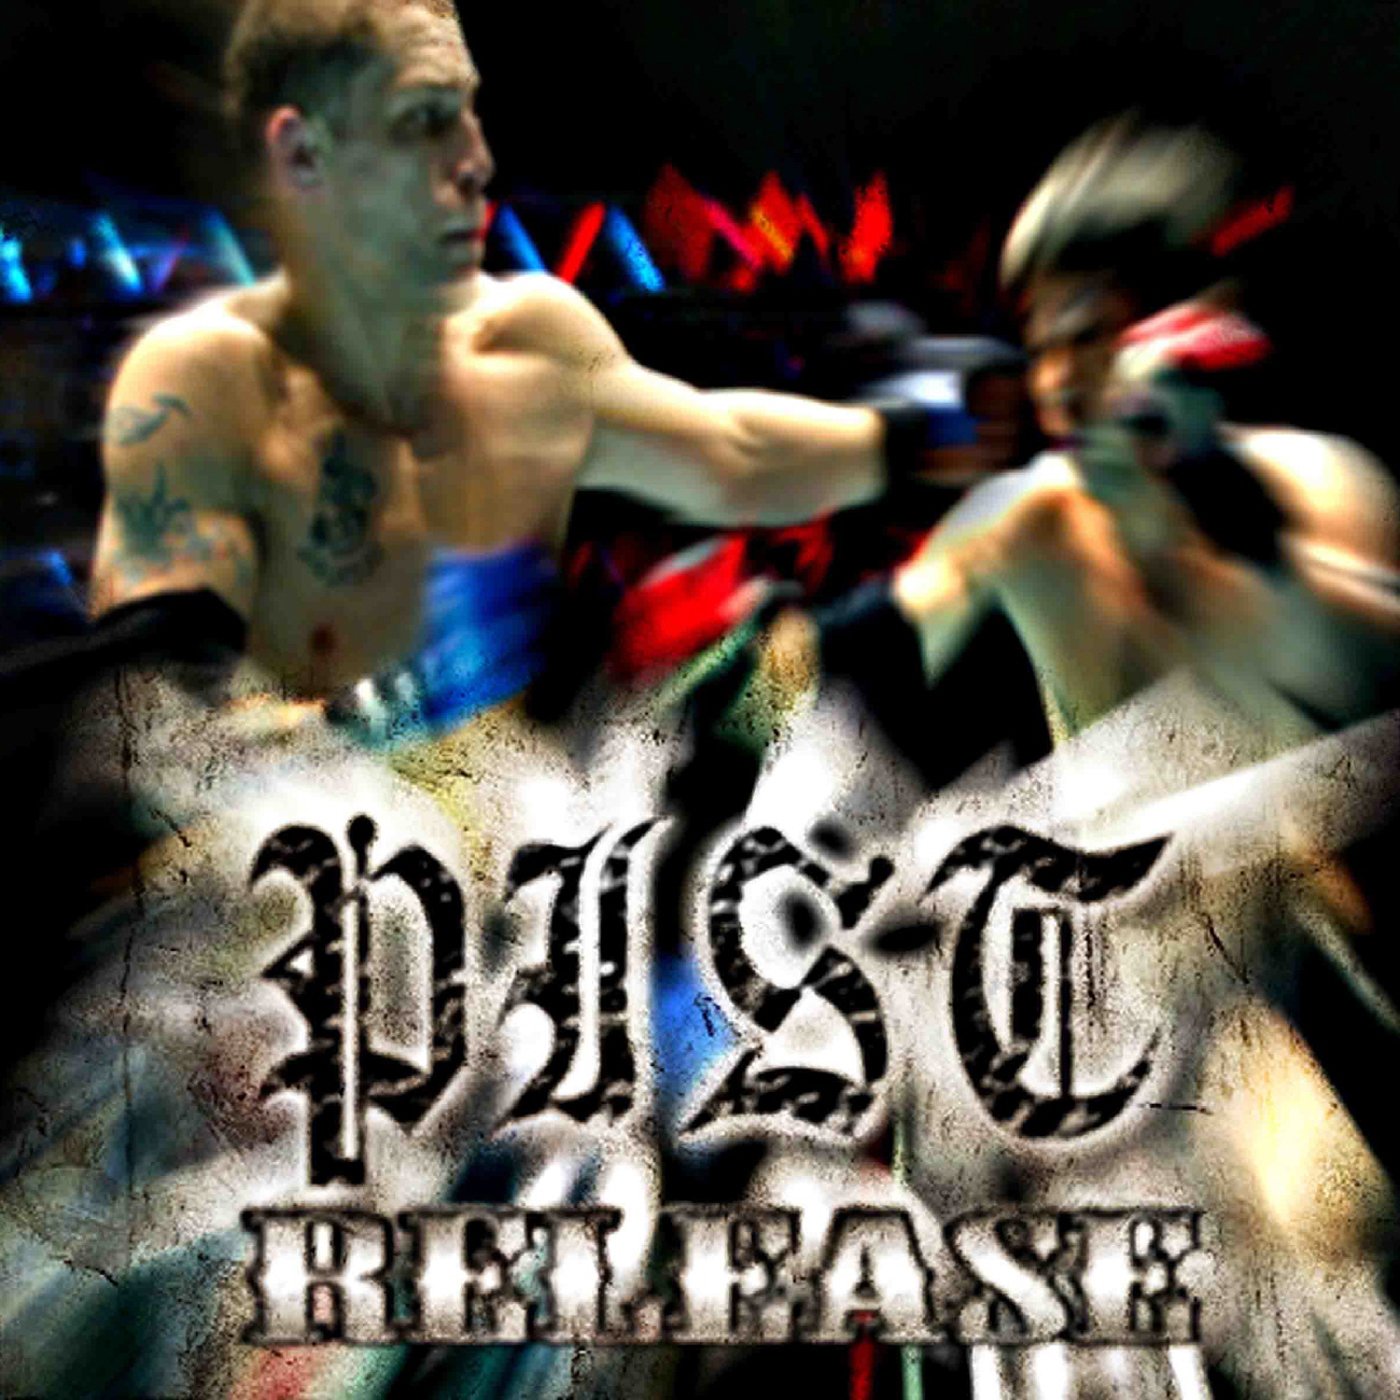 Release by Pist